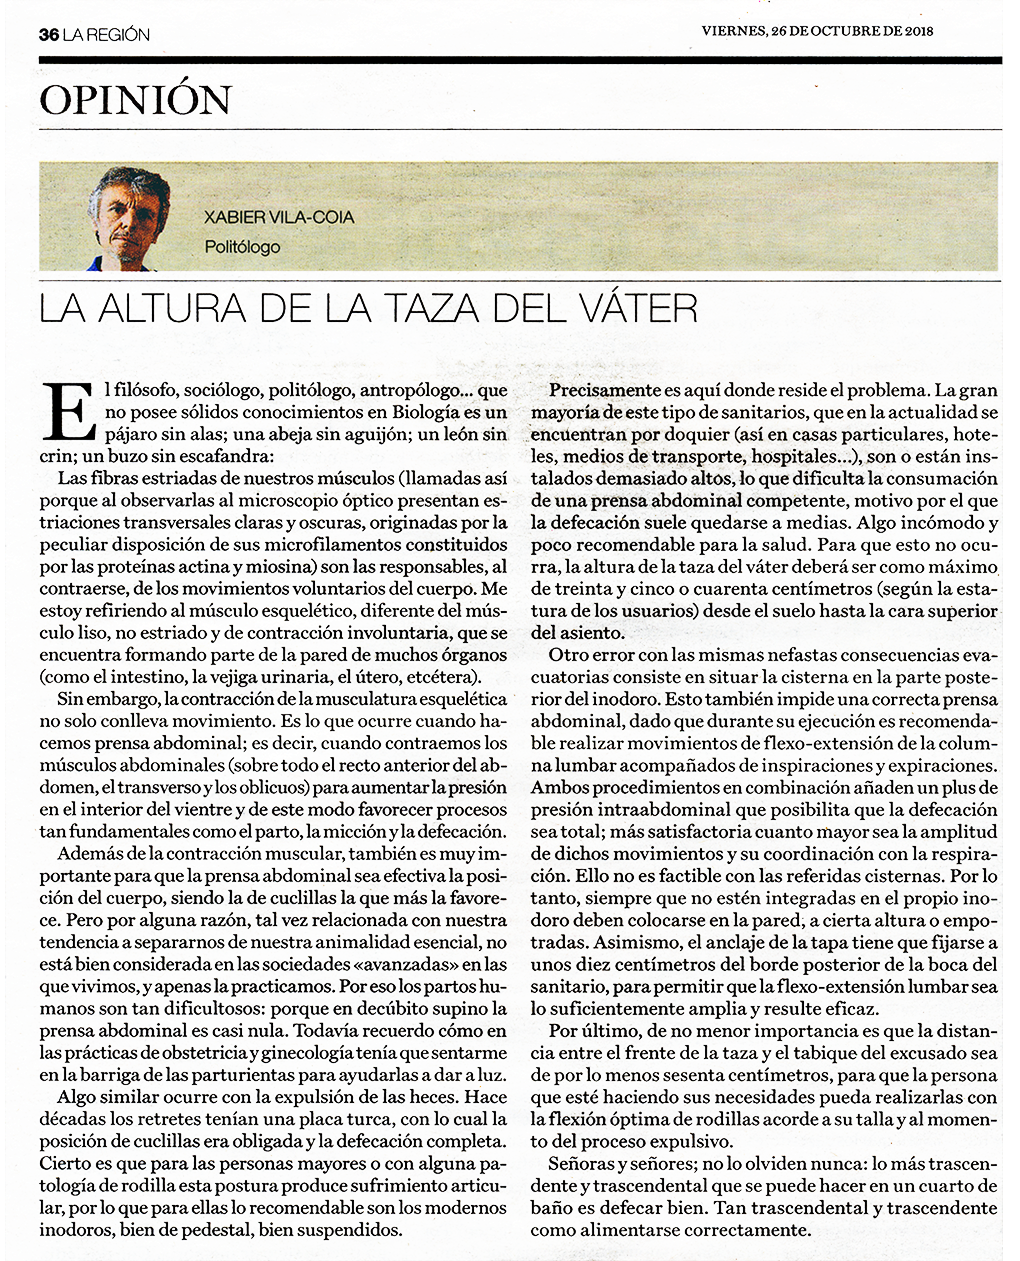 Artículo de opinión de Xabier Vila-Coia, titulado "La altura de la taza del váter", publicado en los diarios La Región y Atlántico en el mes de octubre de 2018.